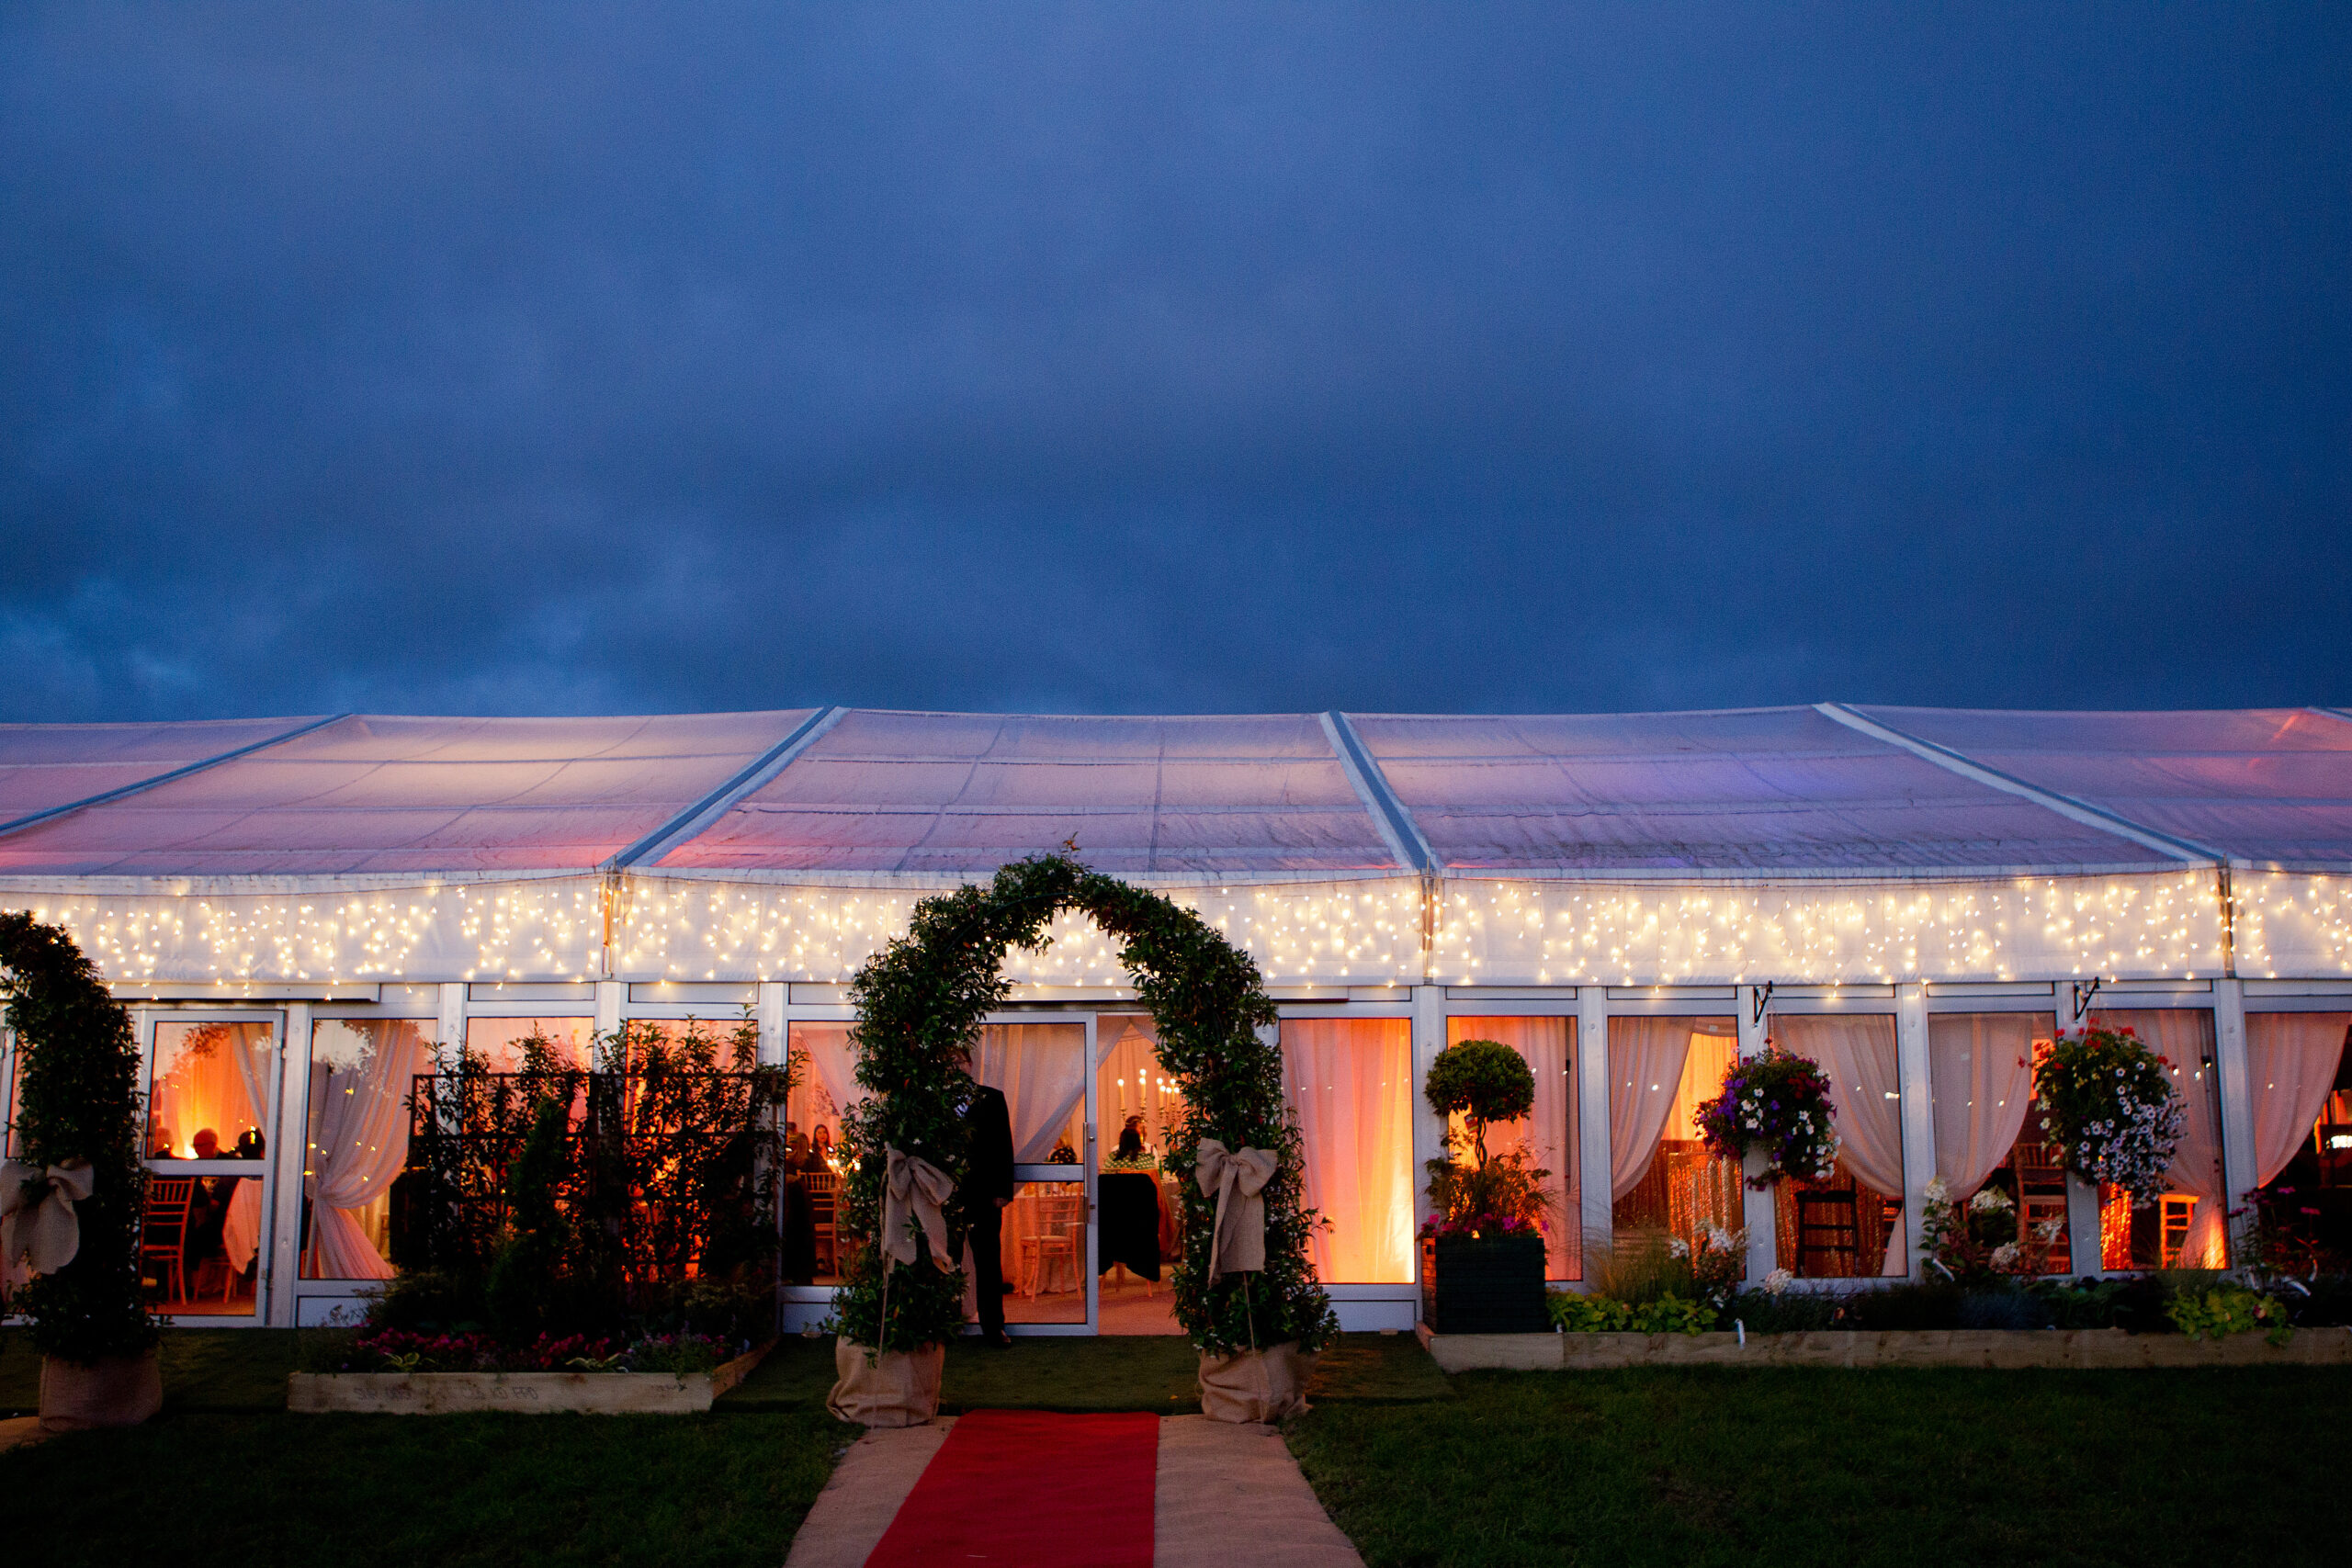 Boyne River Farm, Marquee Wedding, Indoor & Outdoor bespoke wedding venue